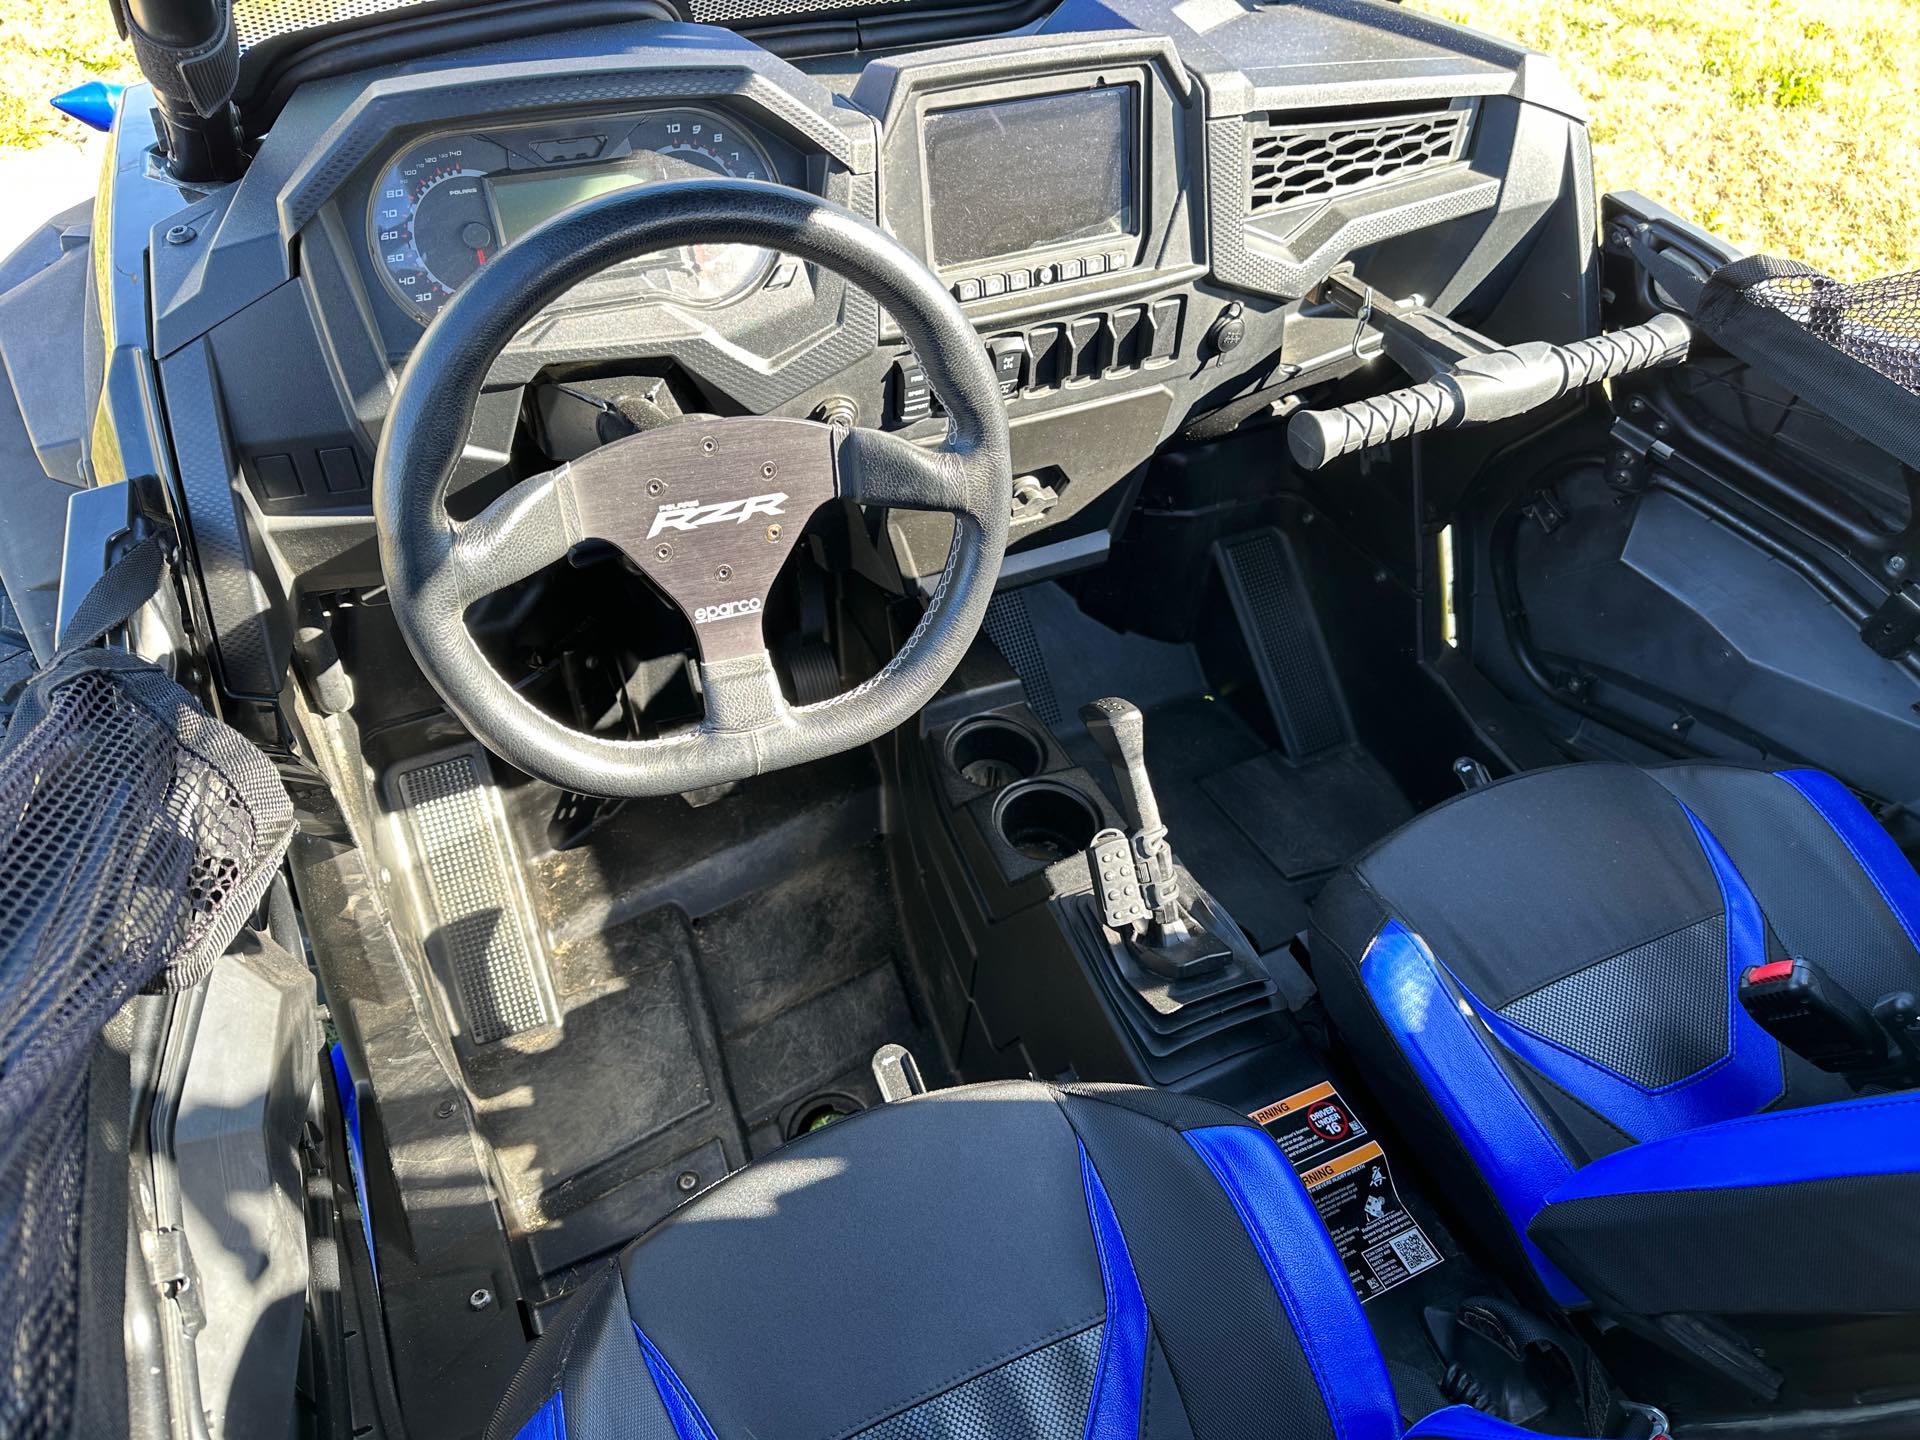 2019 Polaris RZR XP 4 Turbo S Velocity at ATVs and More